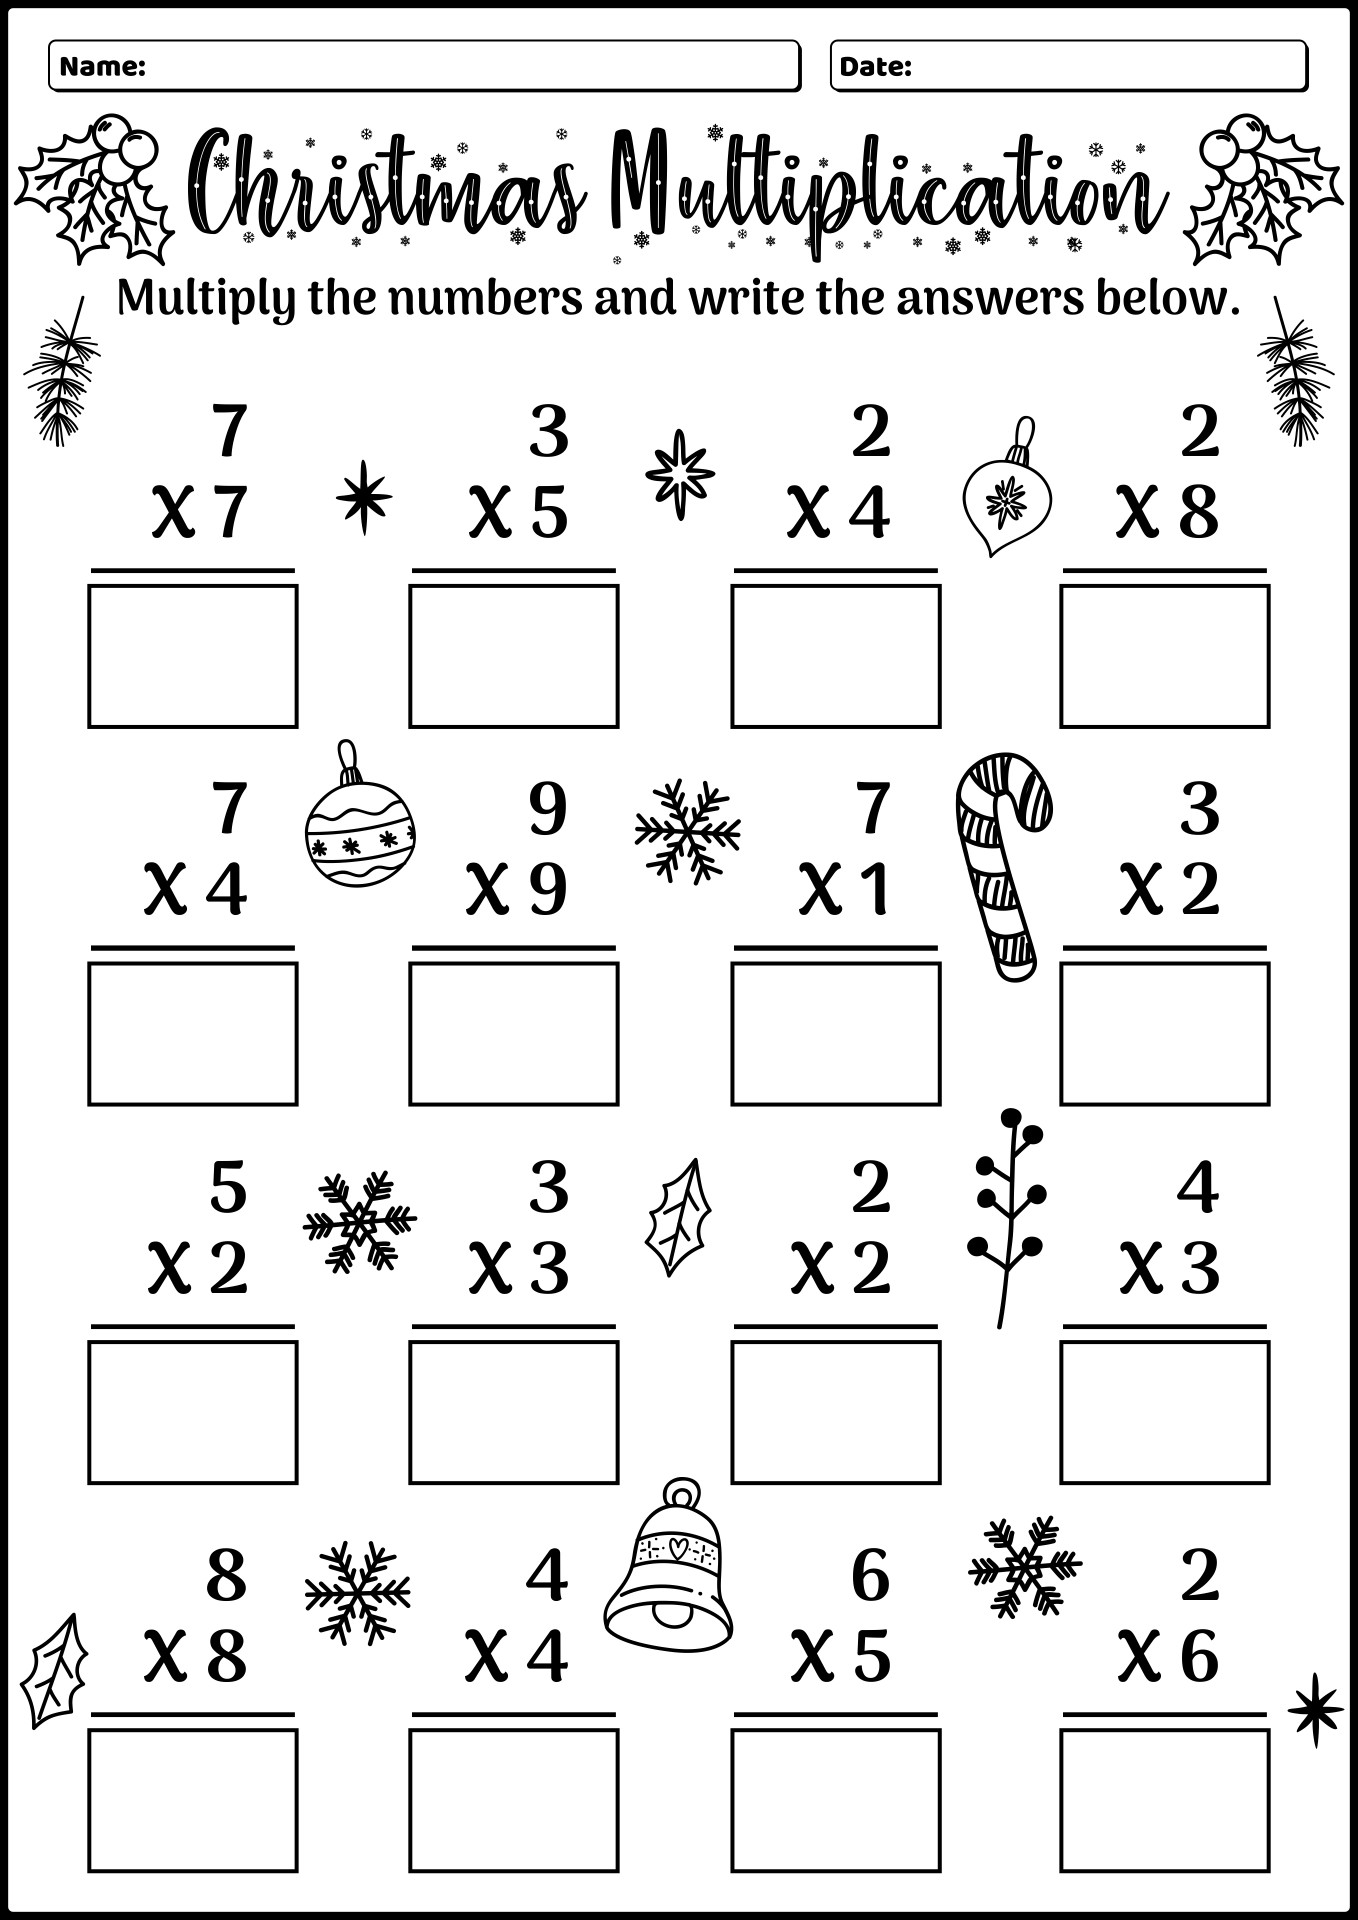 14 Best Images of Christmas Multiplication Color Worksheet Hidden ...